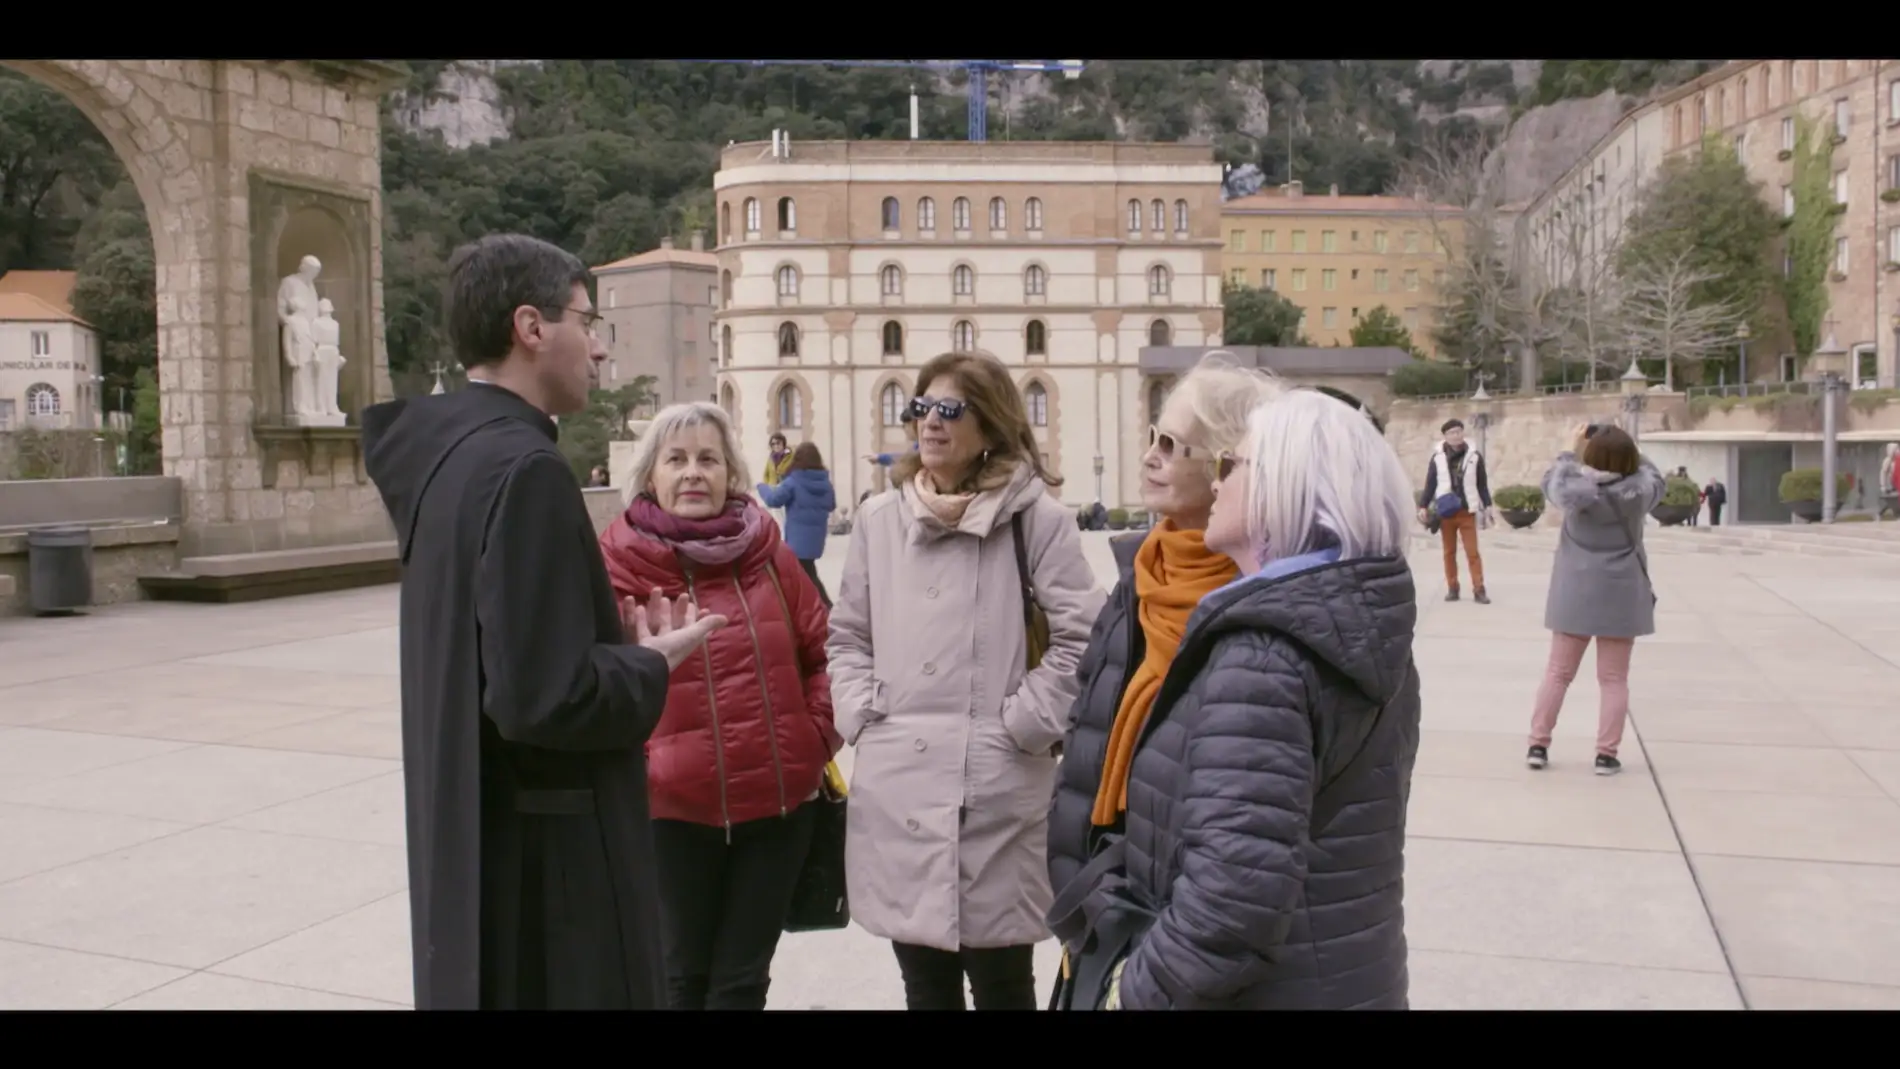 Las abuelas vivitan Montserrat y hablan con un monje en Bienvenidas al norte